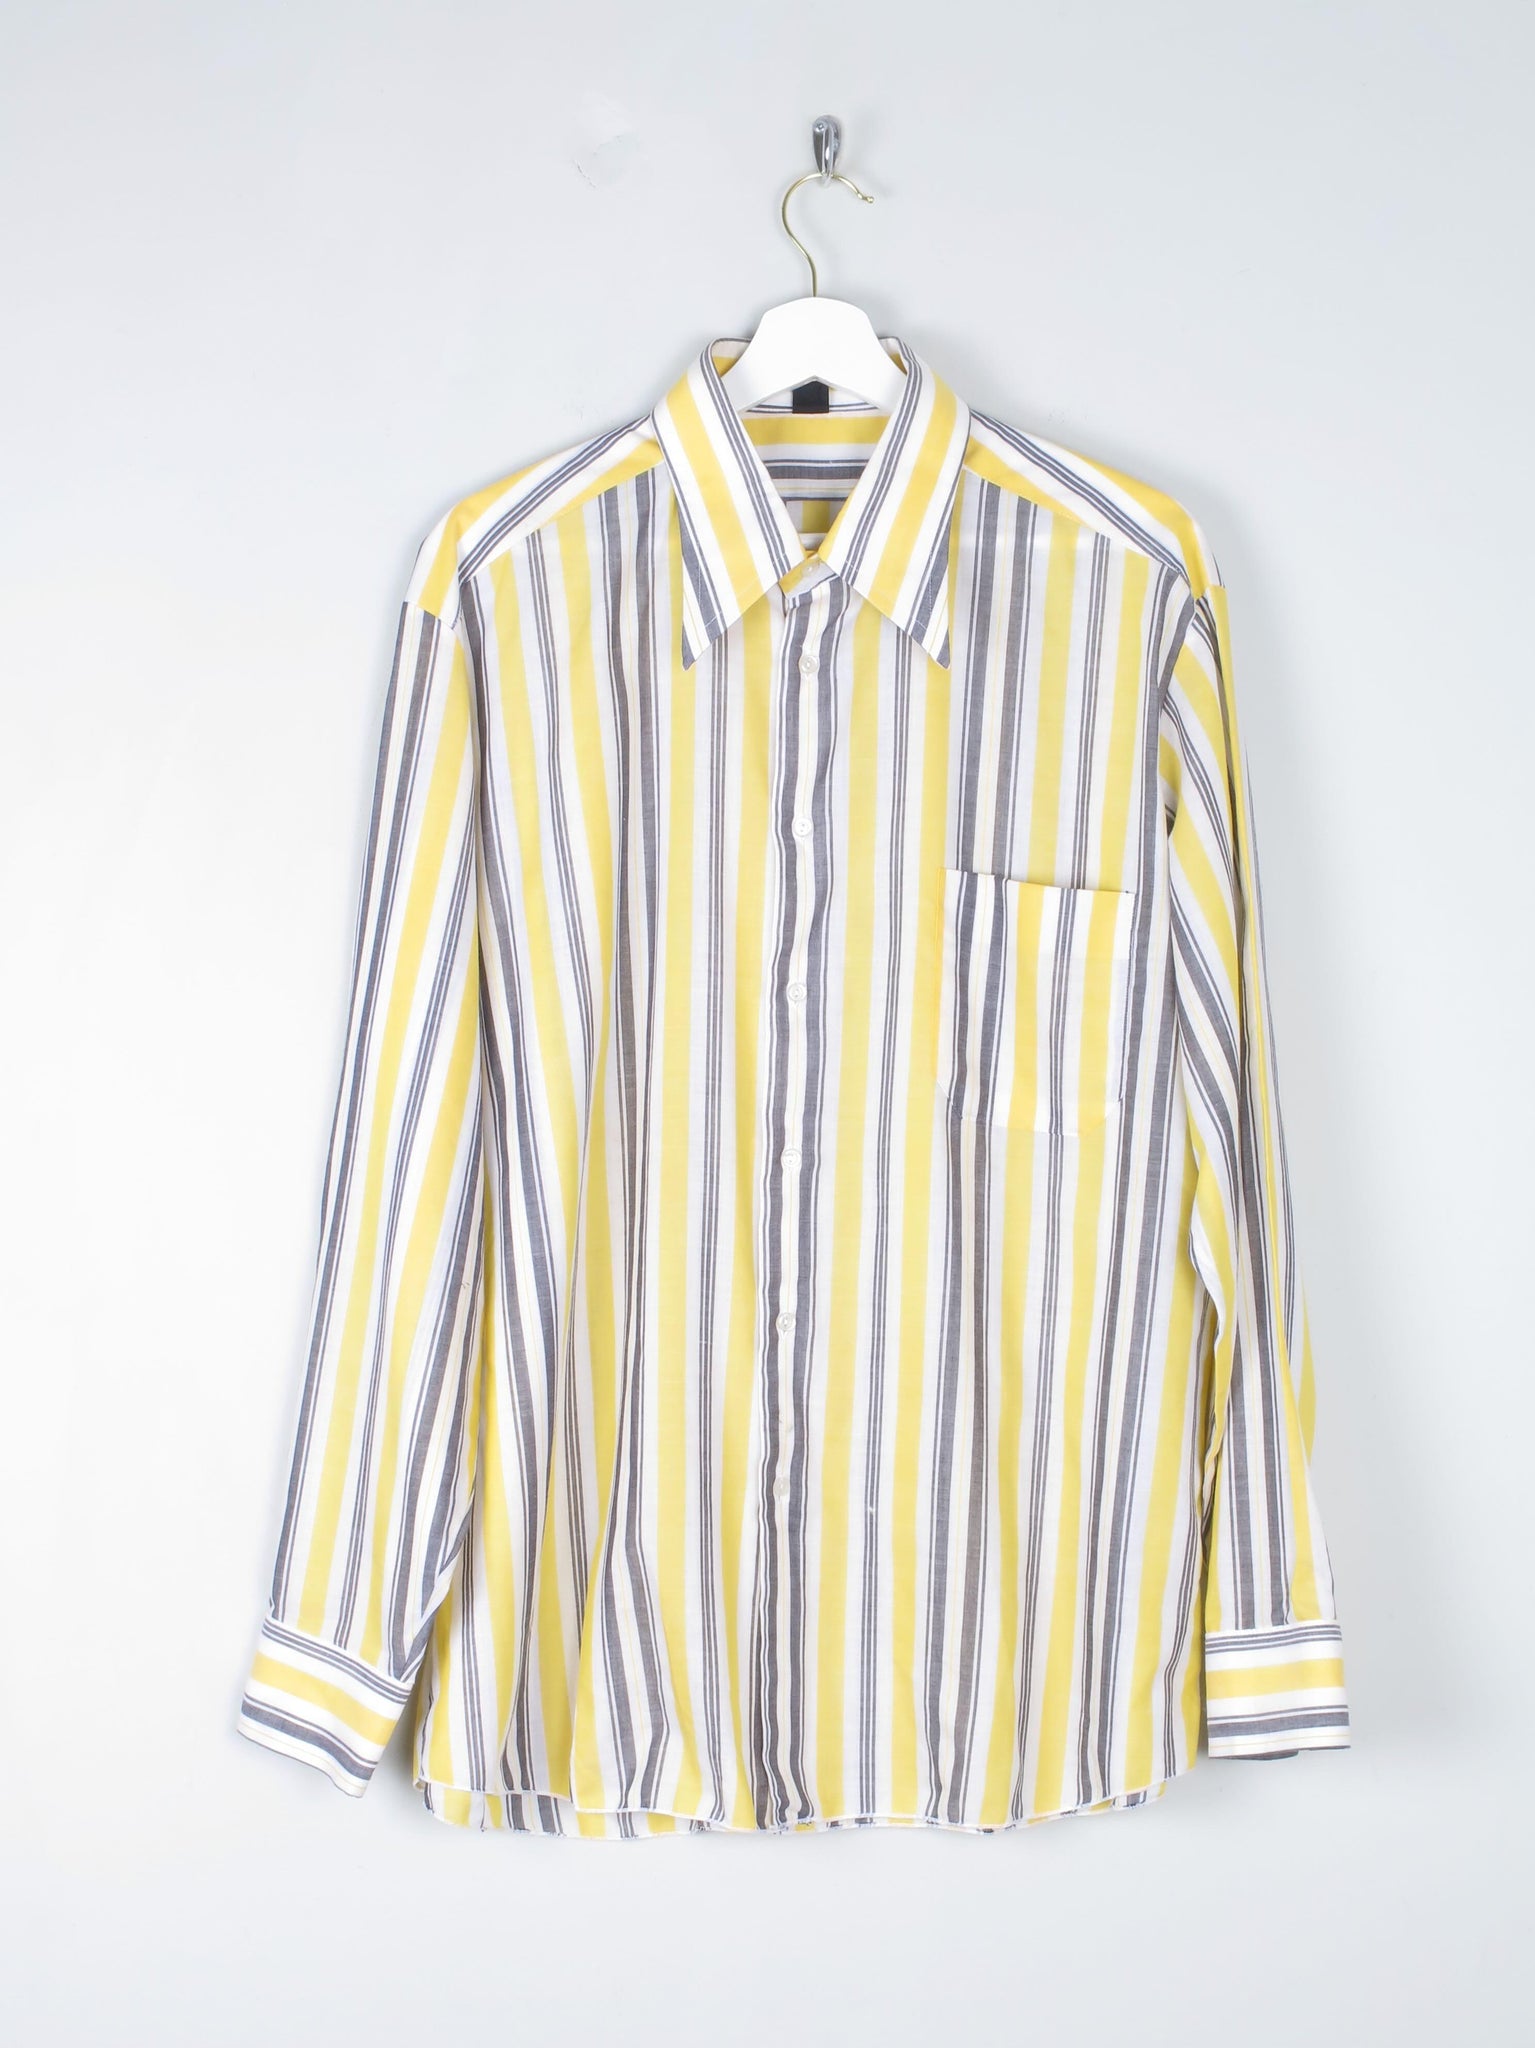 Men's Striped Vintage Shirt XL - The Harlequin